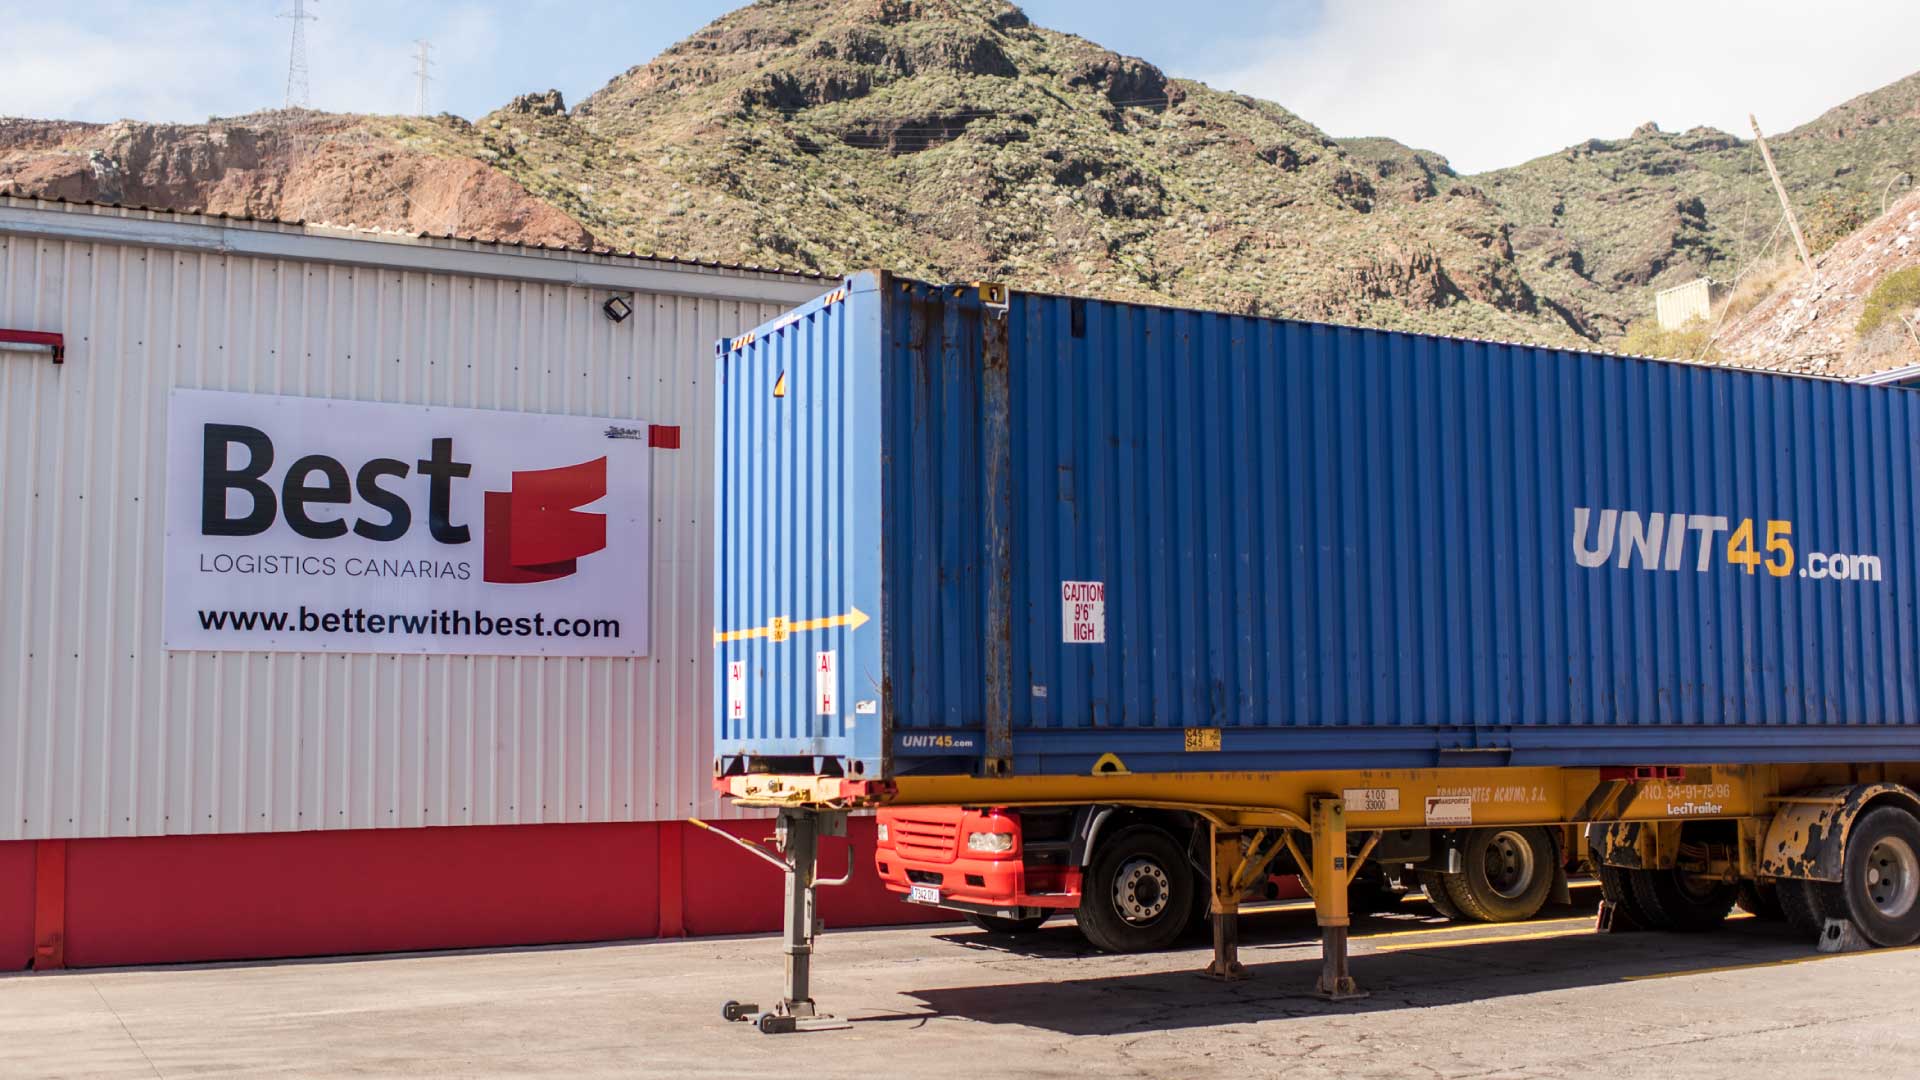 Best-Logistics-Canarias-transporte-intermodal-canarias